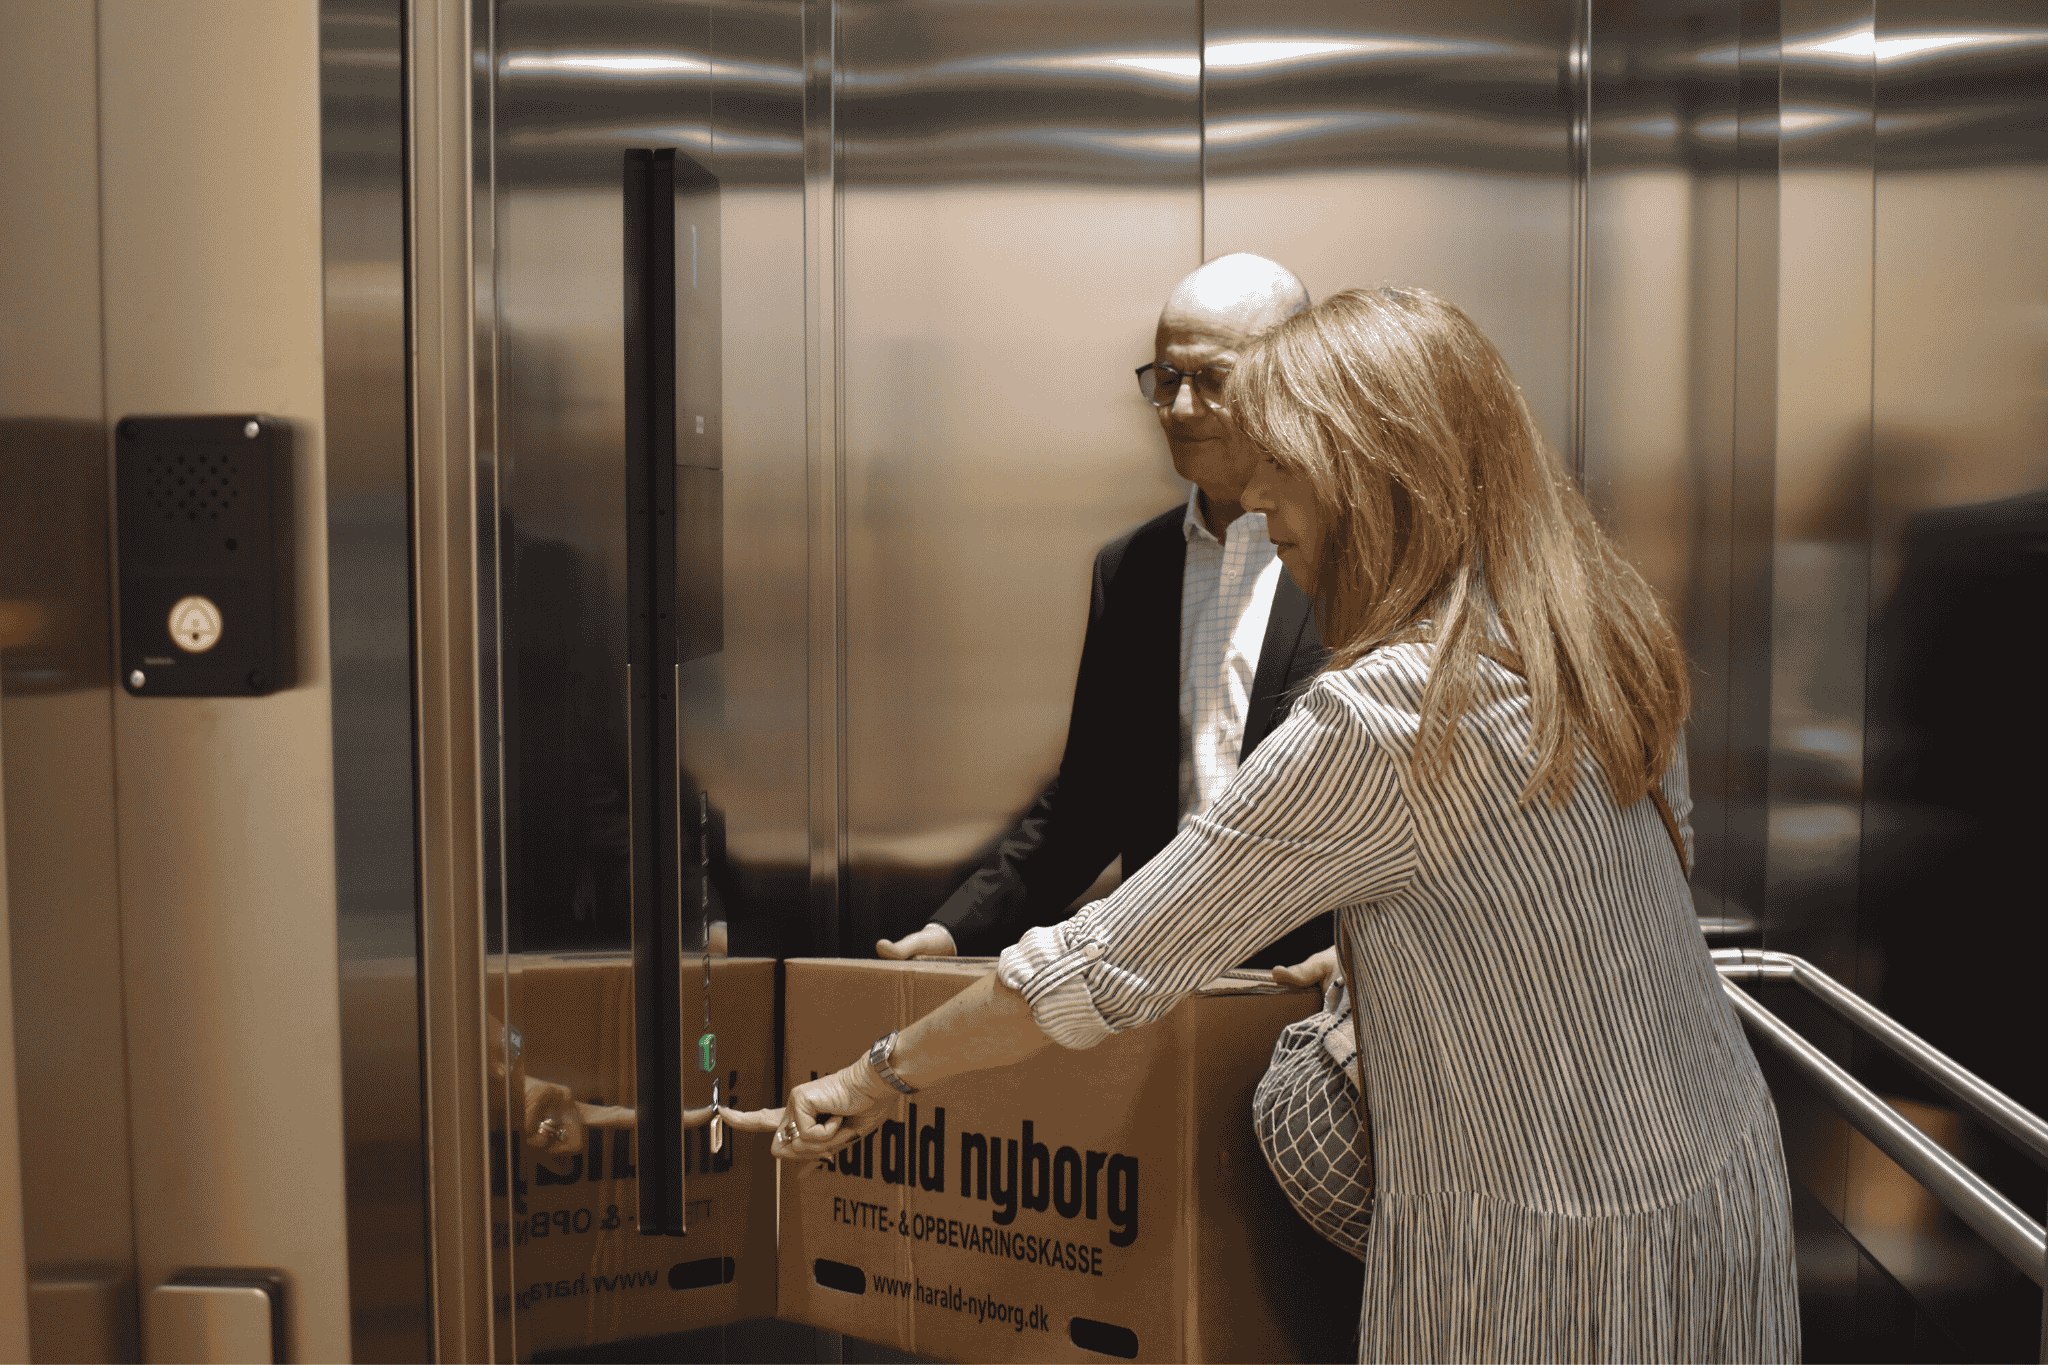 Elevator i bagtrappen